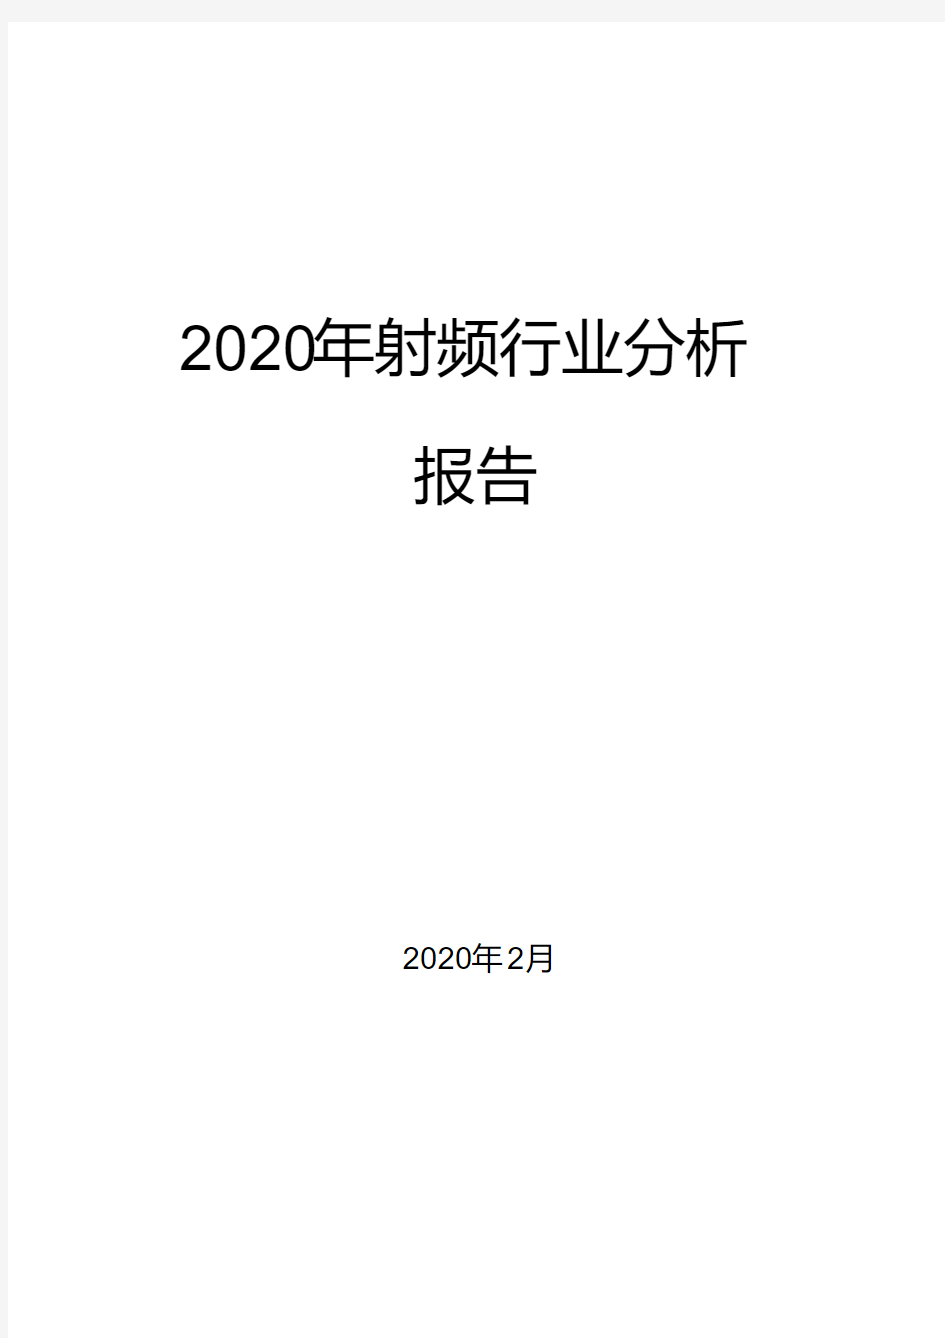 2020年射频行业分析报告